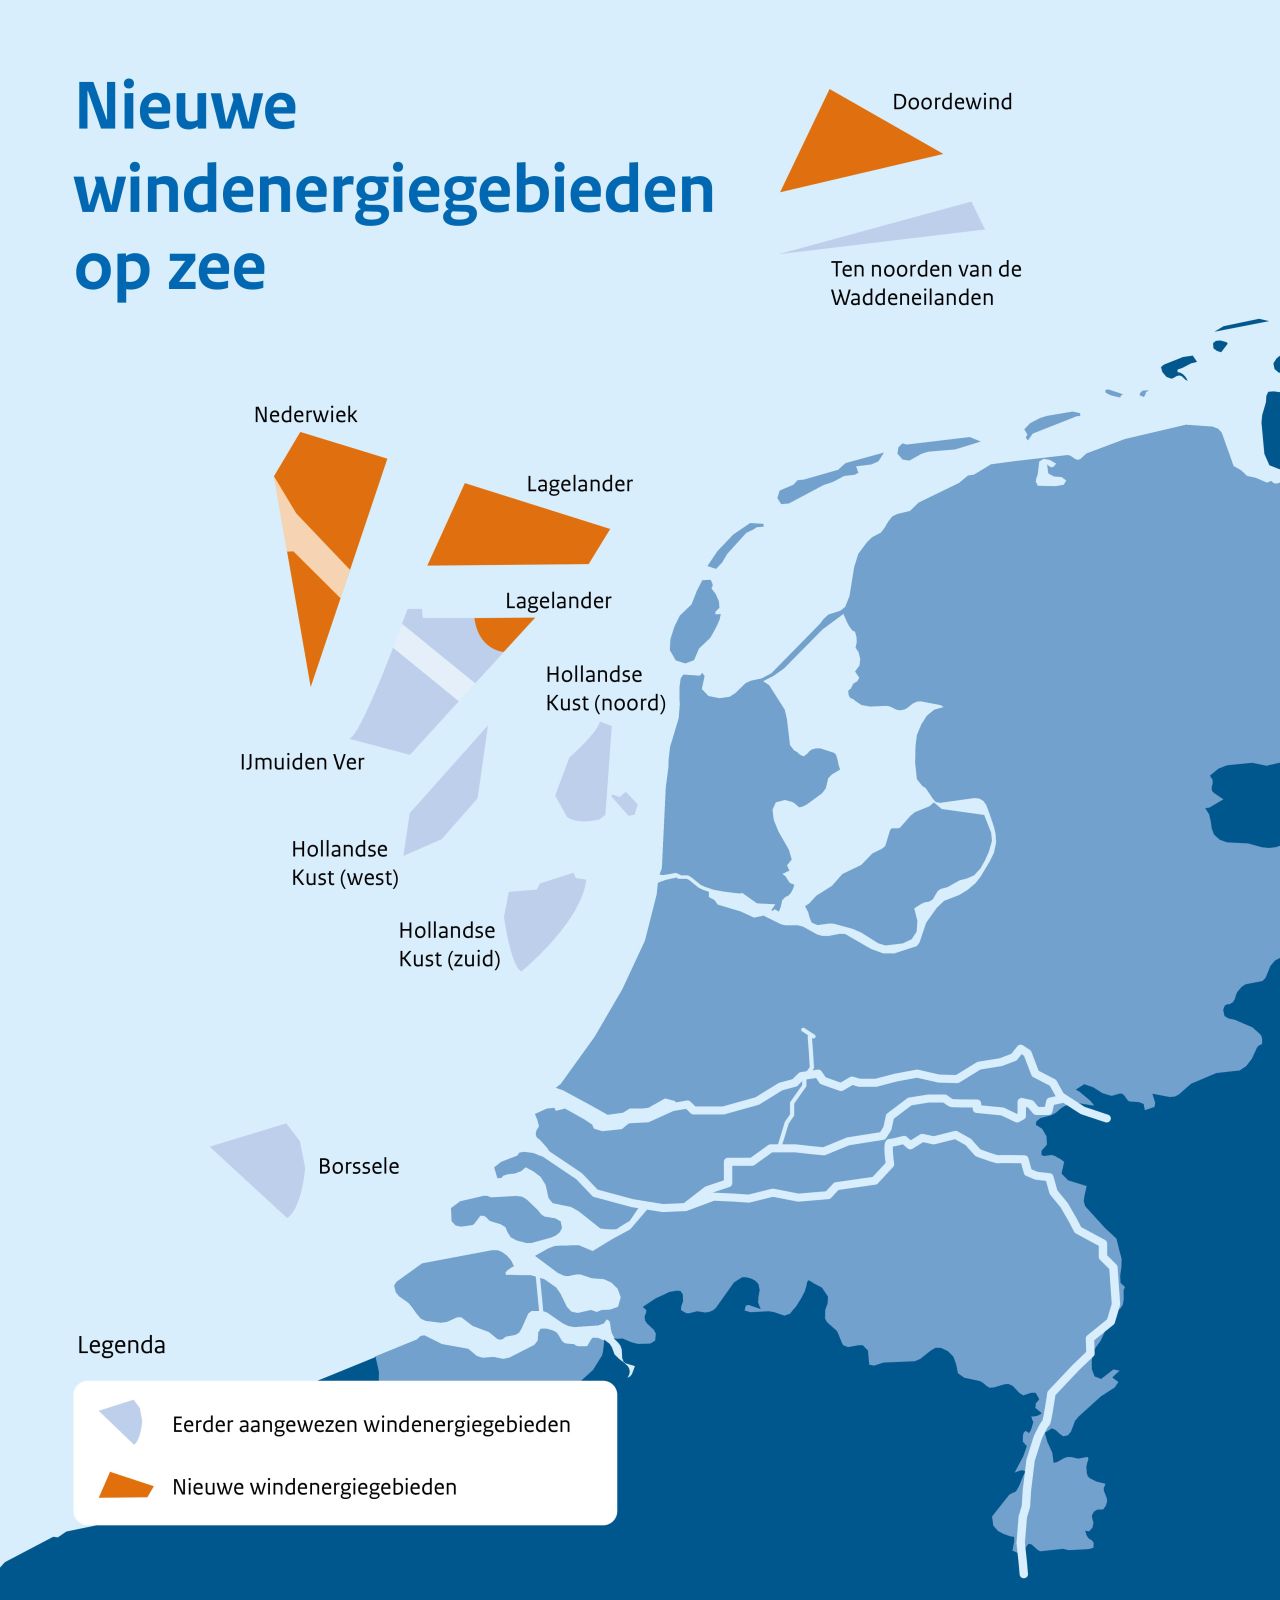 Nederland vertegenwoordigt 10,7 gigawatt verse zeelucht